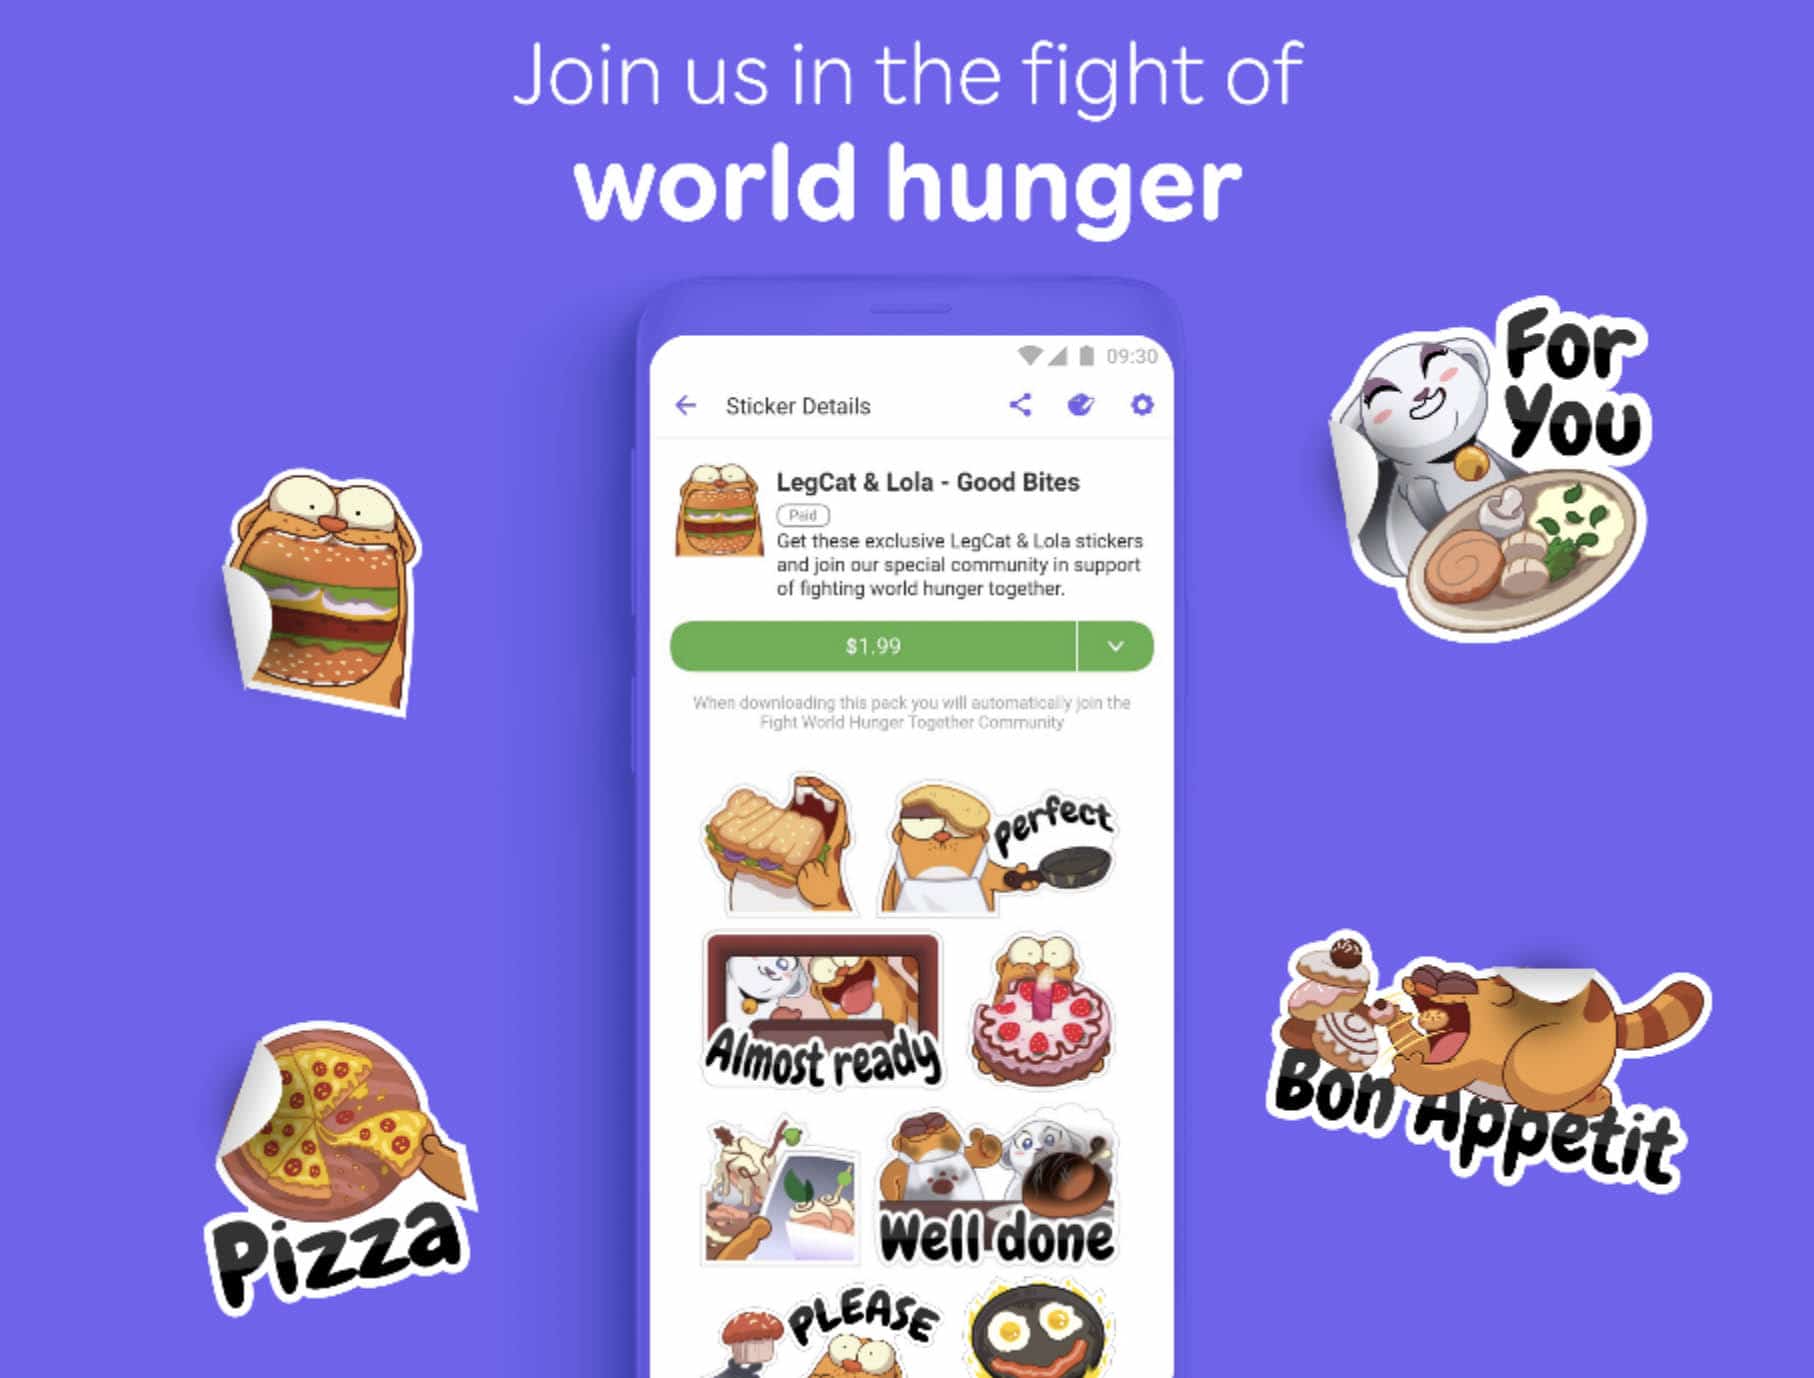 Rakuten Viber phát động chiến dịch chống lại nạn đói toàn cầu giữa cuộc khủng hoảng COVID-19